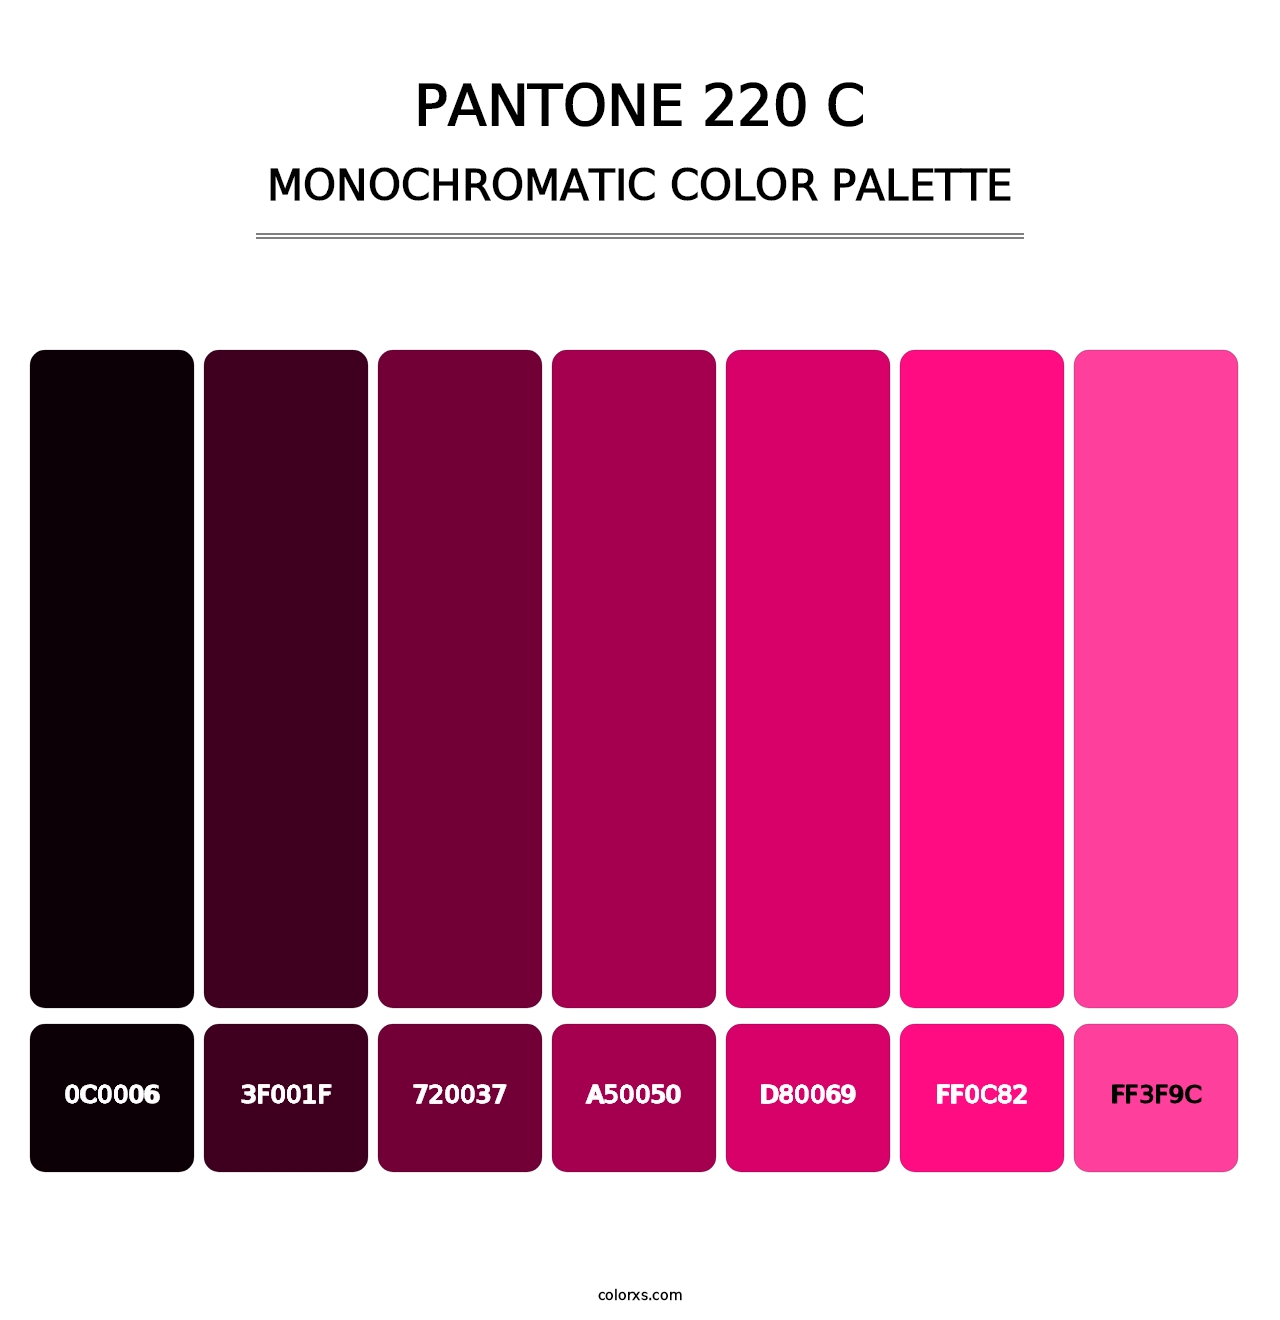 PANTONE 220 C - Monochromatic Color Palette